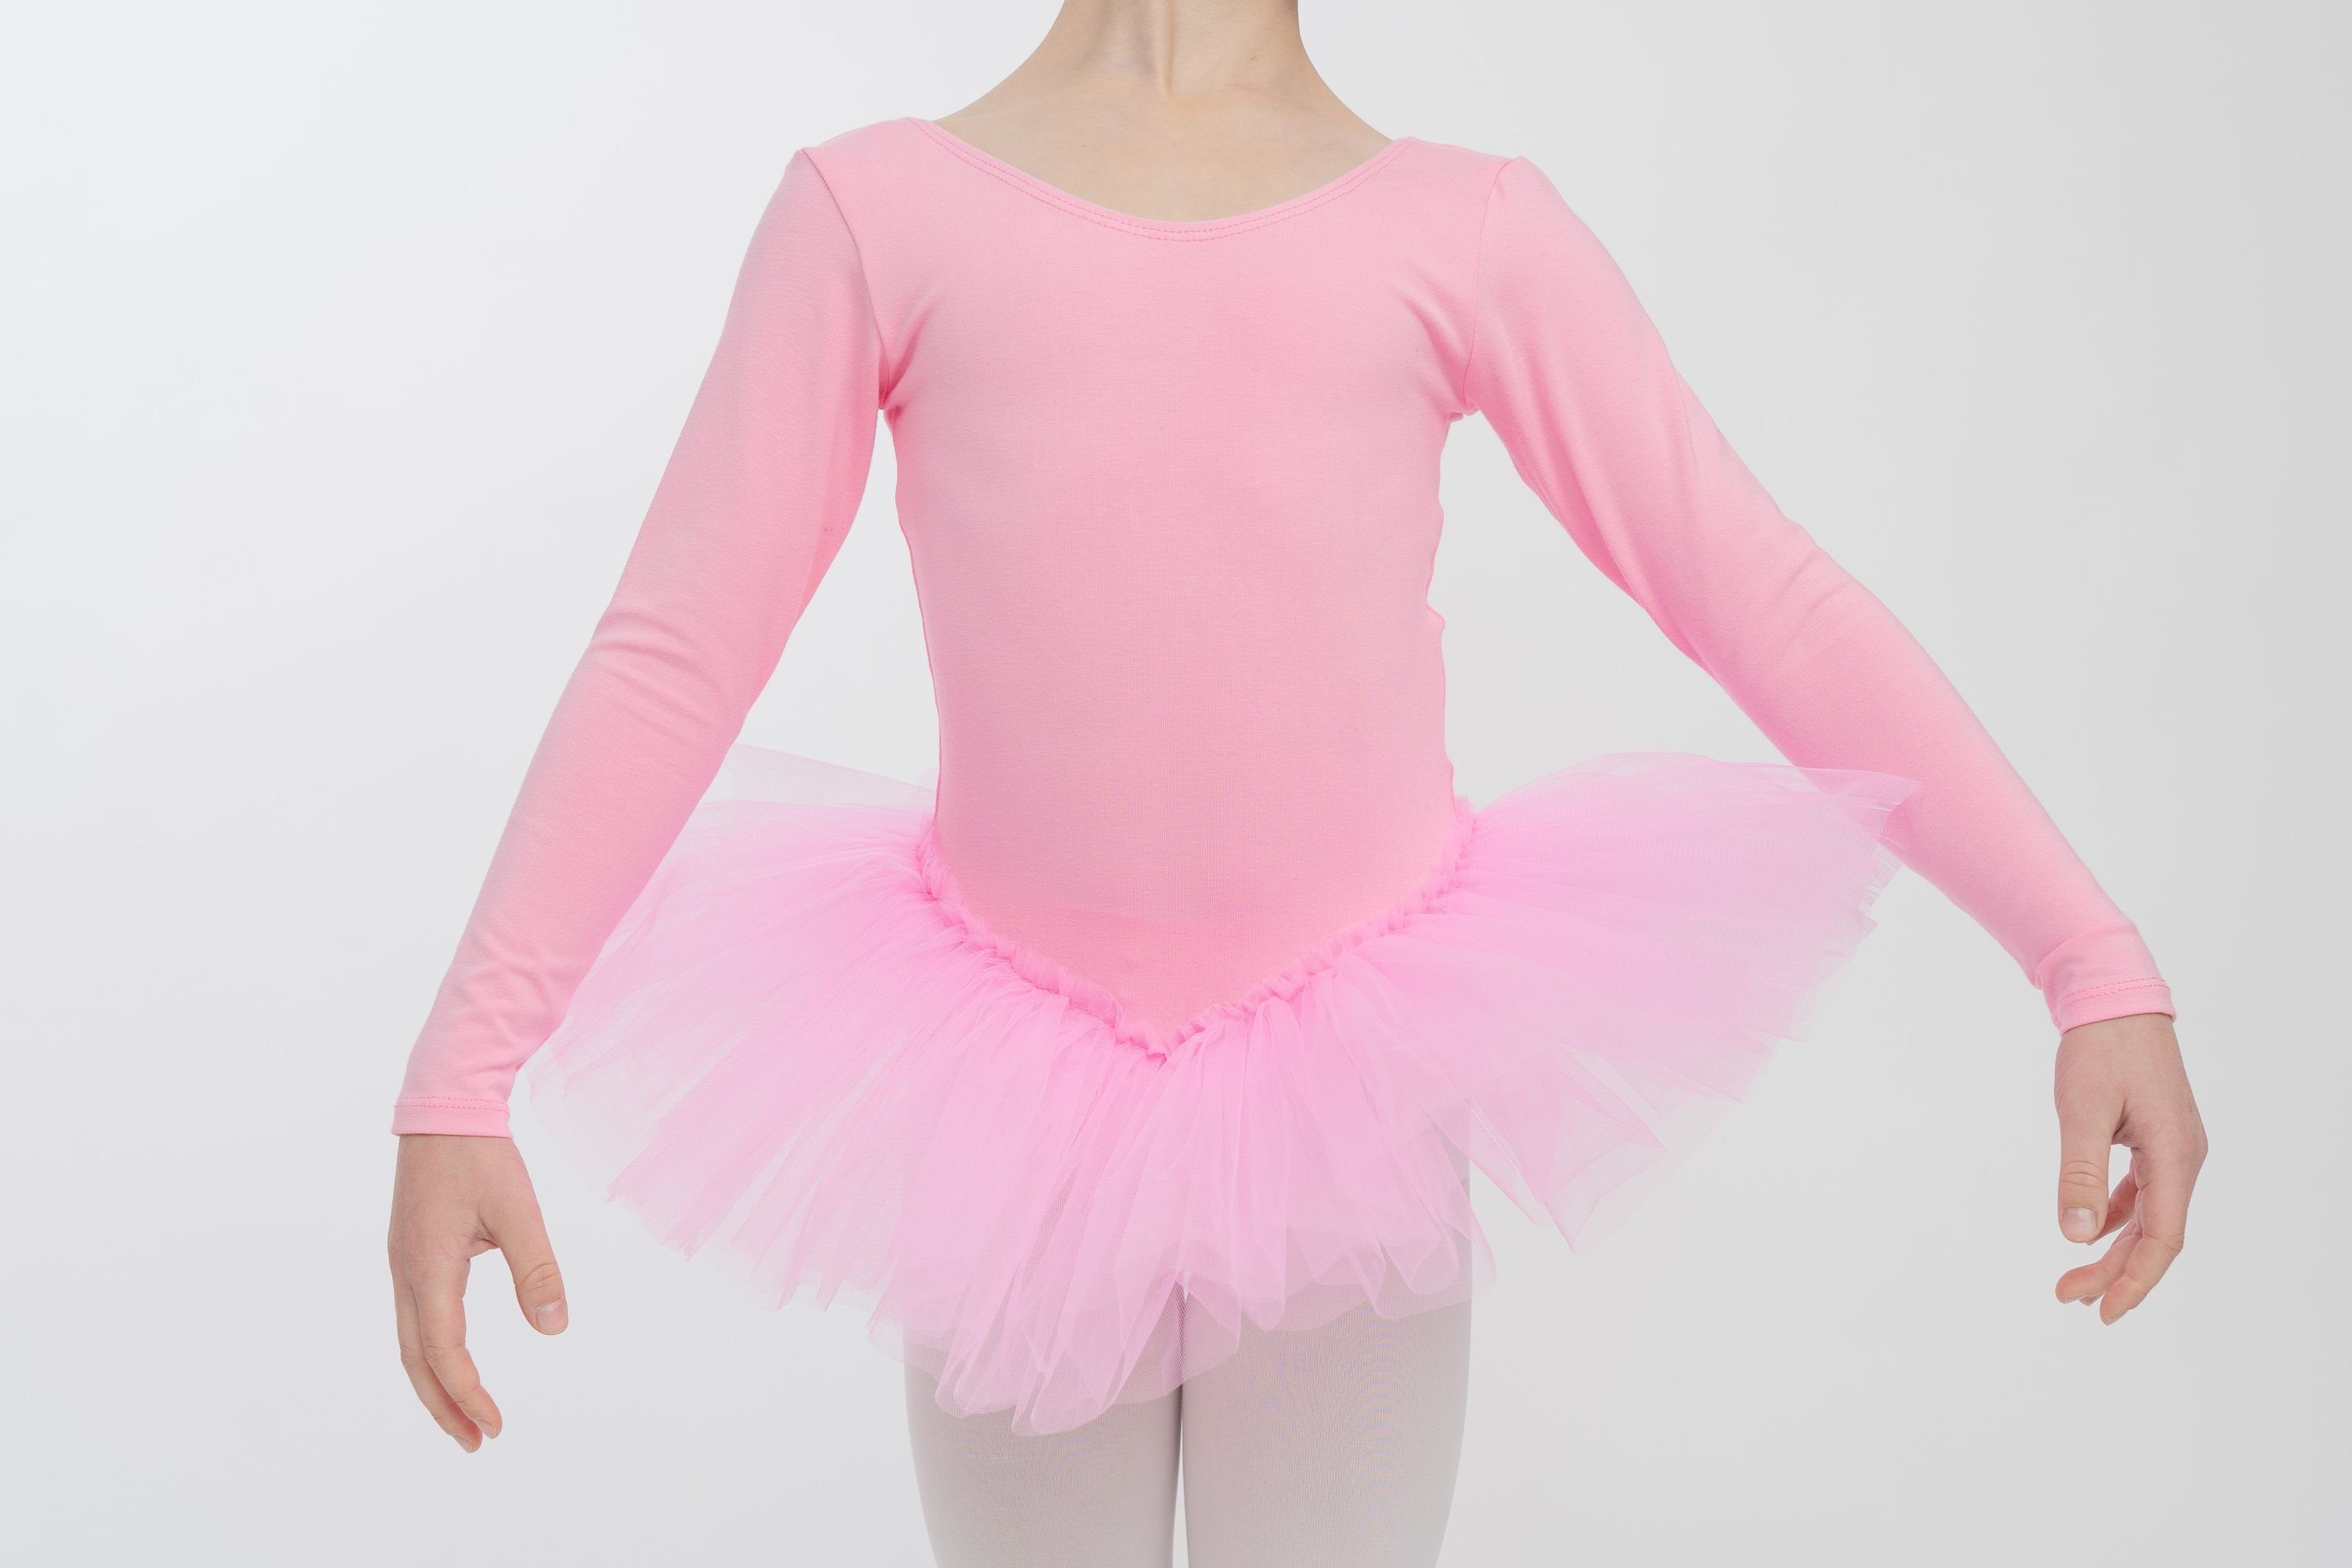 Tüllrock mit tanzmuster langem Tutu Tüllkleid für rosa Alea Ballettkleid Arm Ballett mit Mädchen